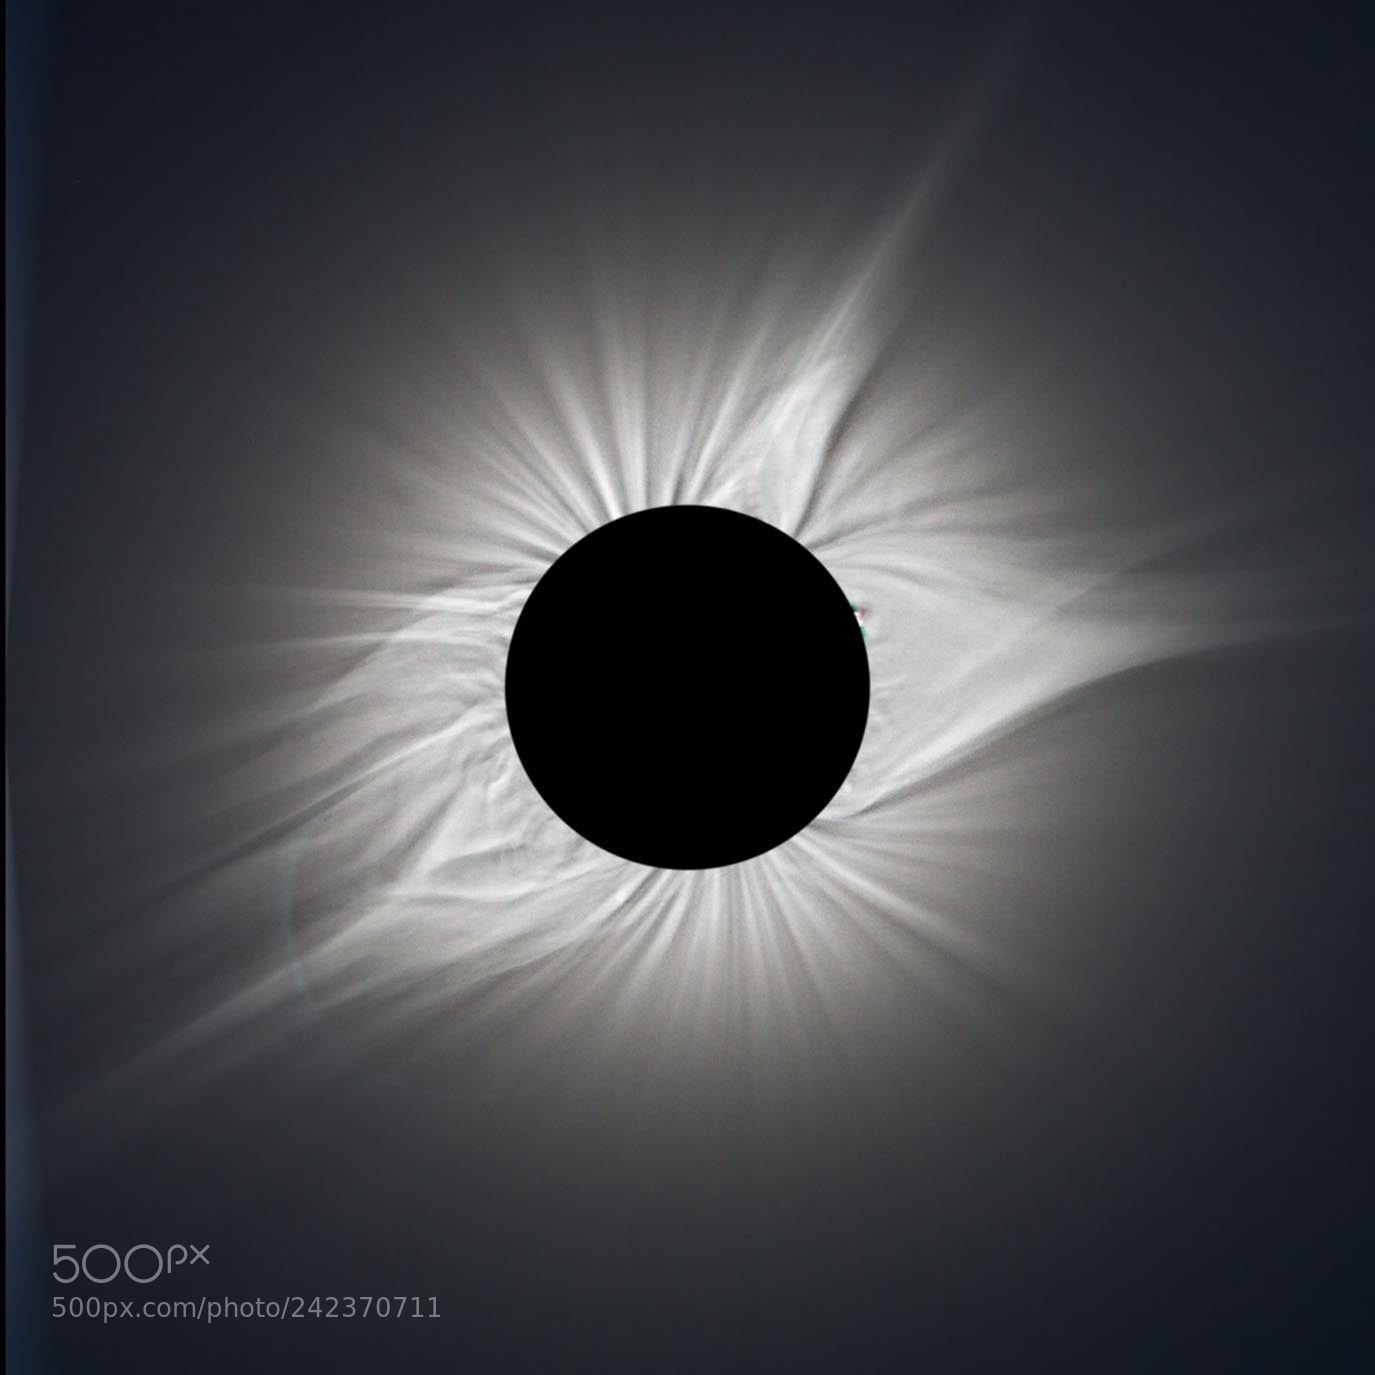 Canon EOS 1100D (EOS Rebel T3 / EOS Kiss X50) sample photo. Solar corona - 2017 eclipse photography